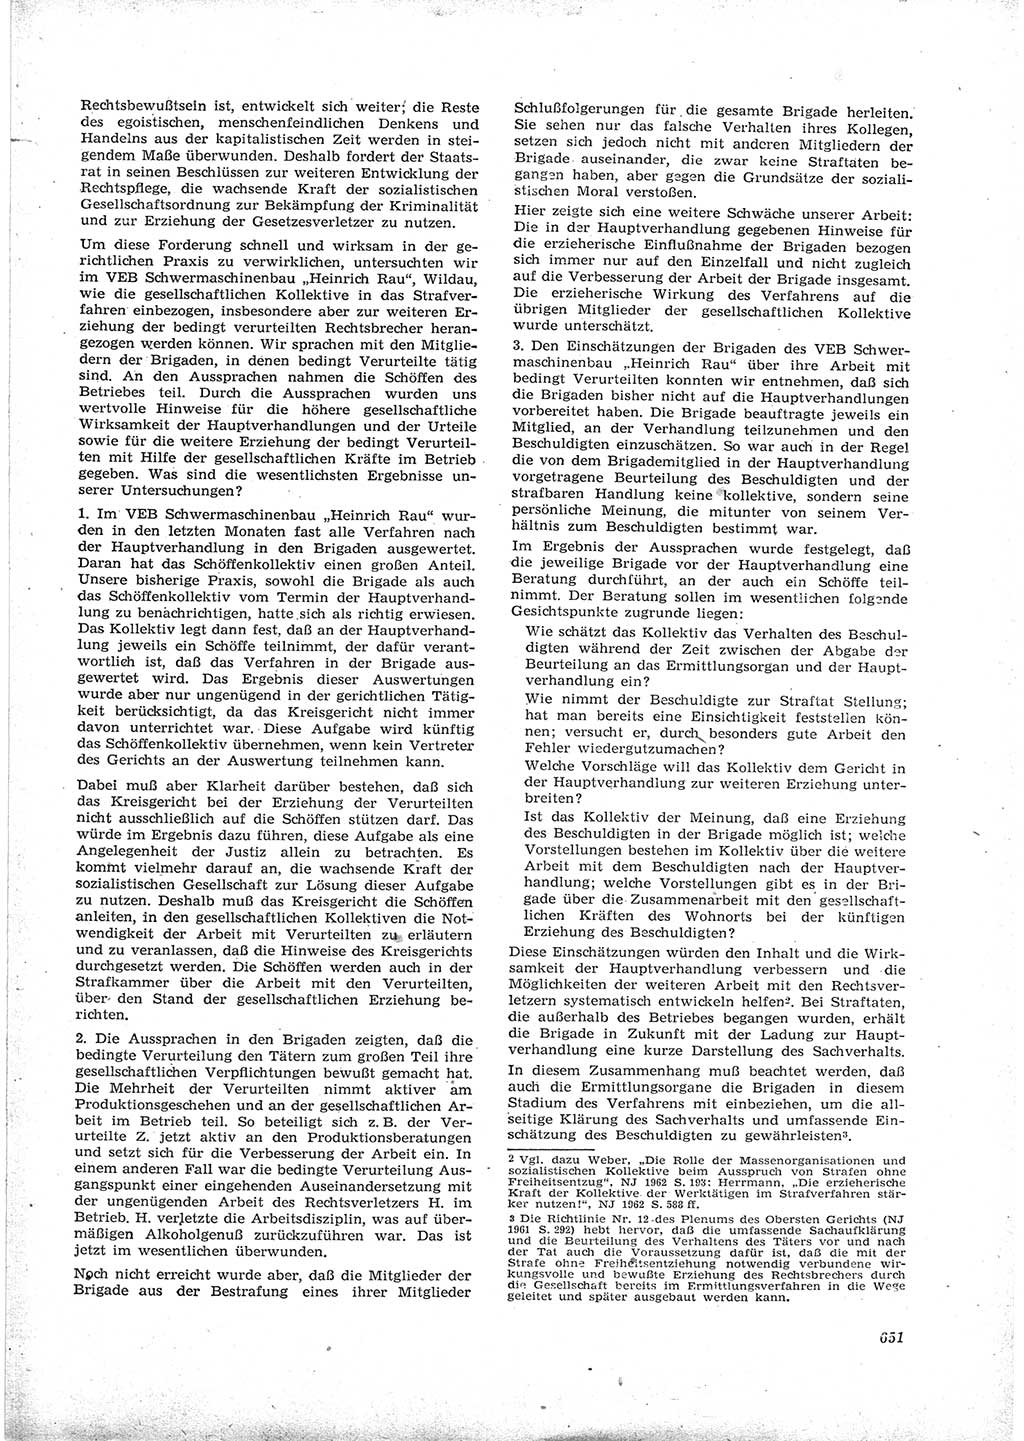 Neue Justiz (NJ), Zeitschrift für Recht und Rechtswissenschaft [Deutsche Demokratische Republik (DDR)], 16. Jahrgang 1962, Seite 651 (NJ DDR 1962, S. 651)